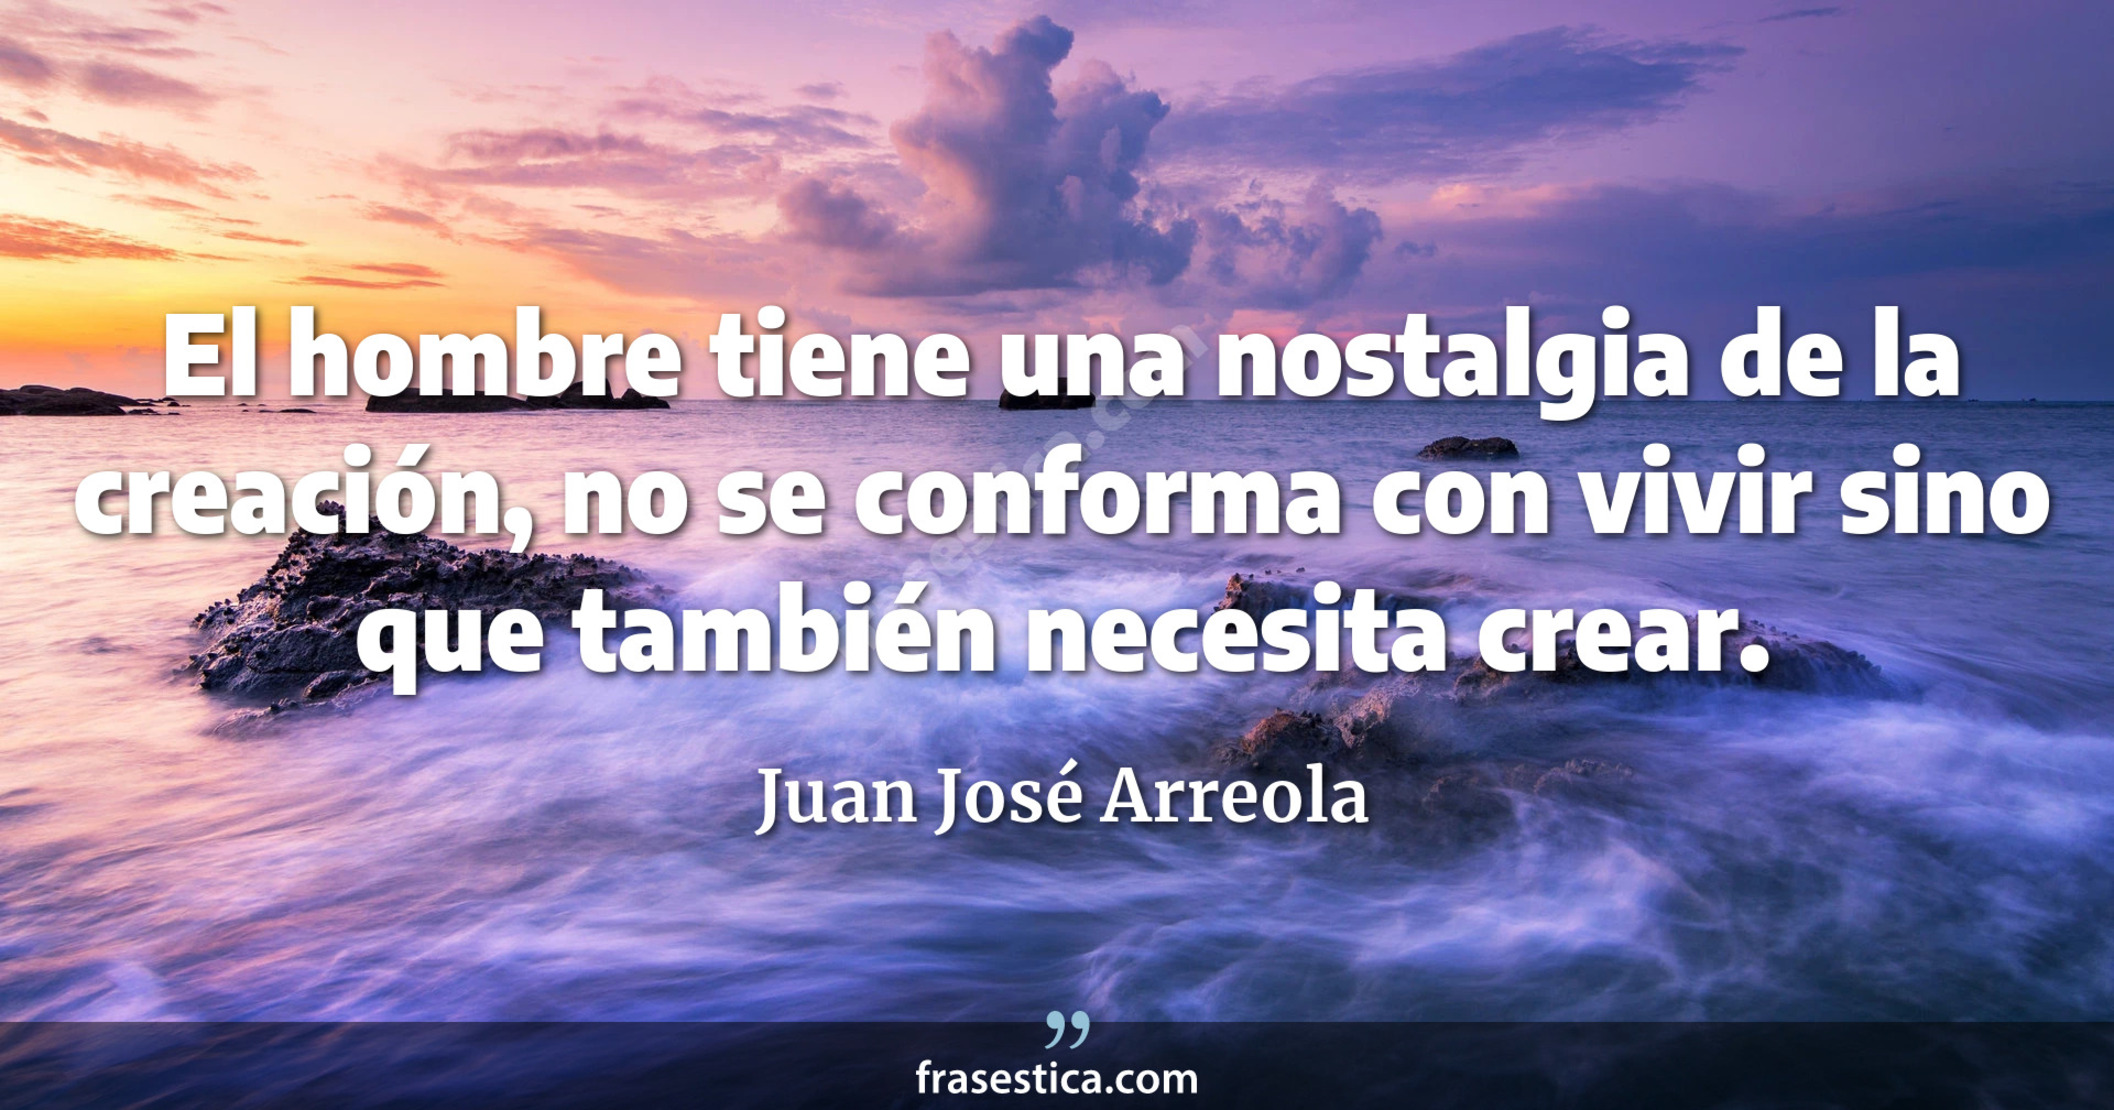 El hombre tiene una nostalgia de la creación, no se conforma con vivir sino que también necesita crear. - Juan José Arreola